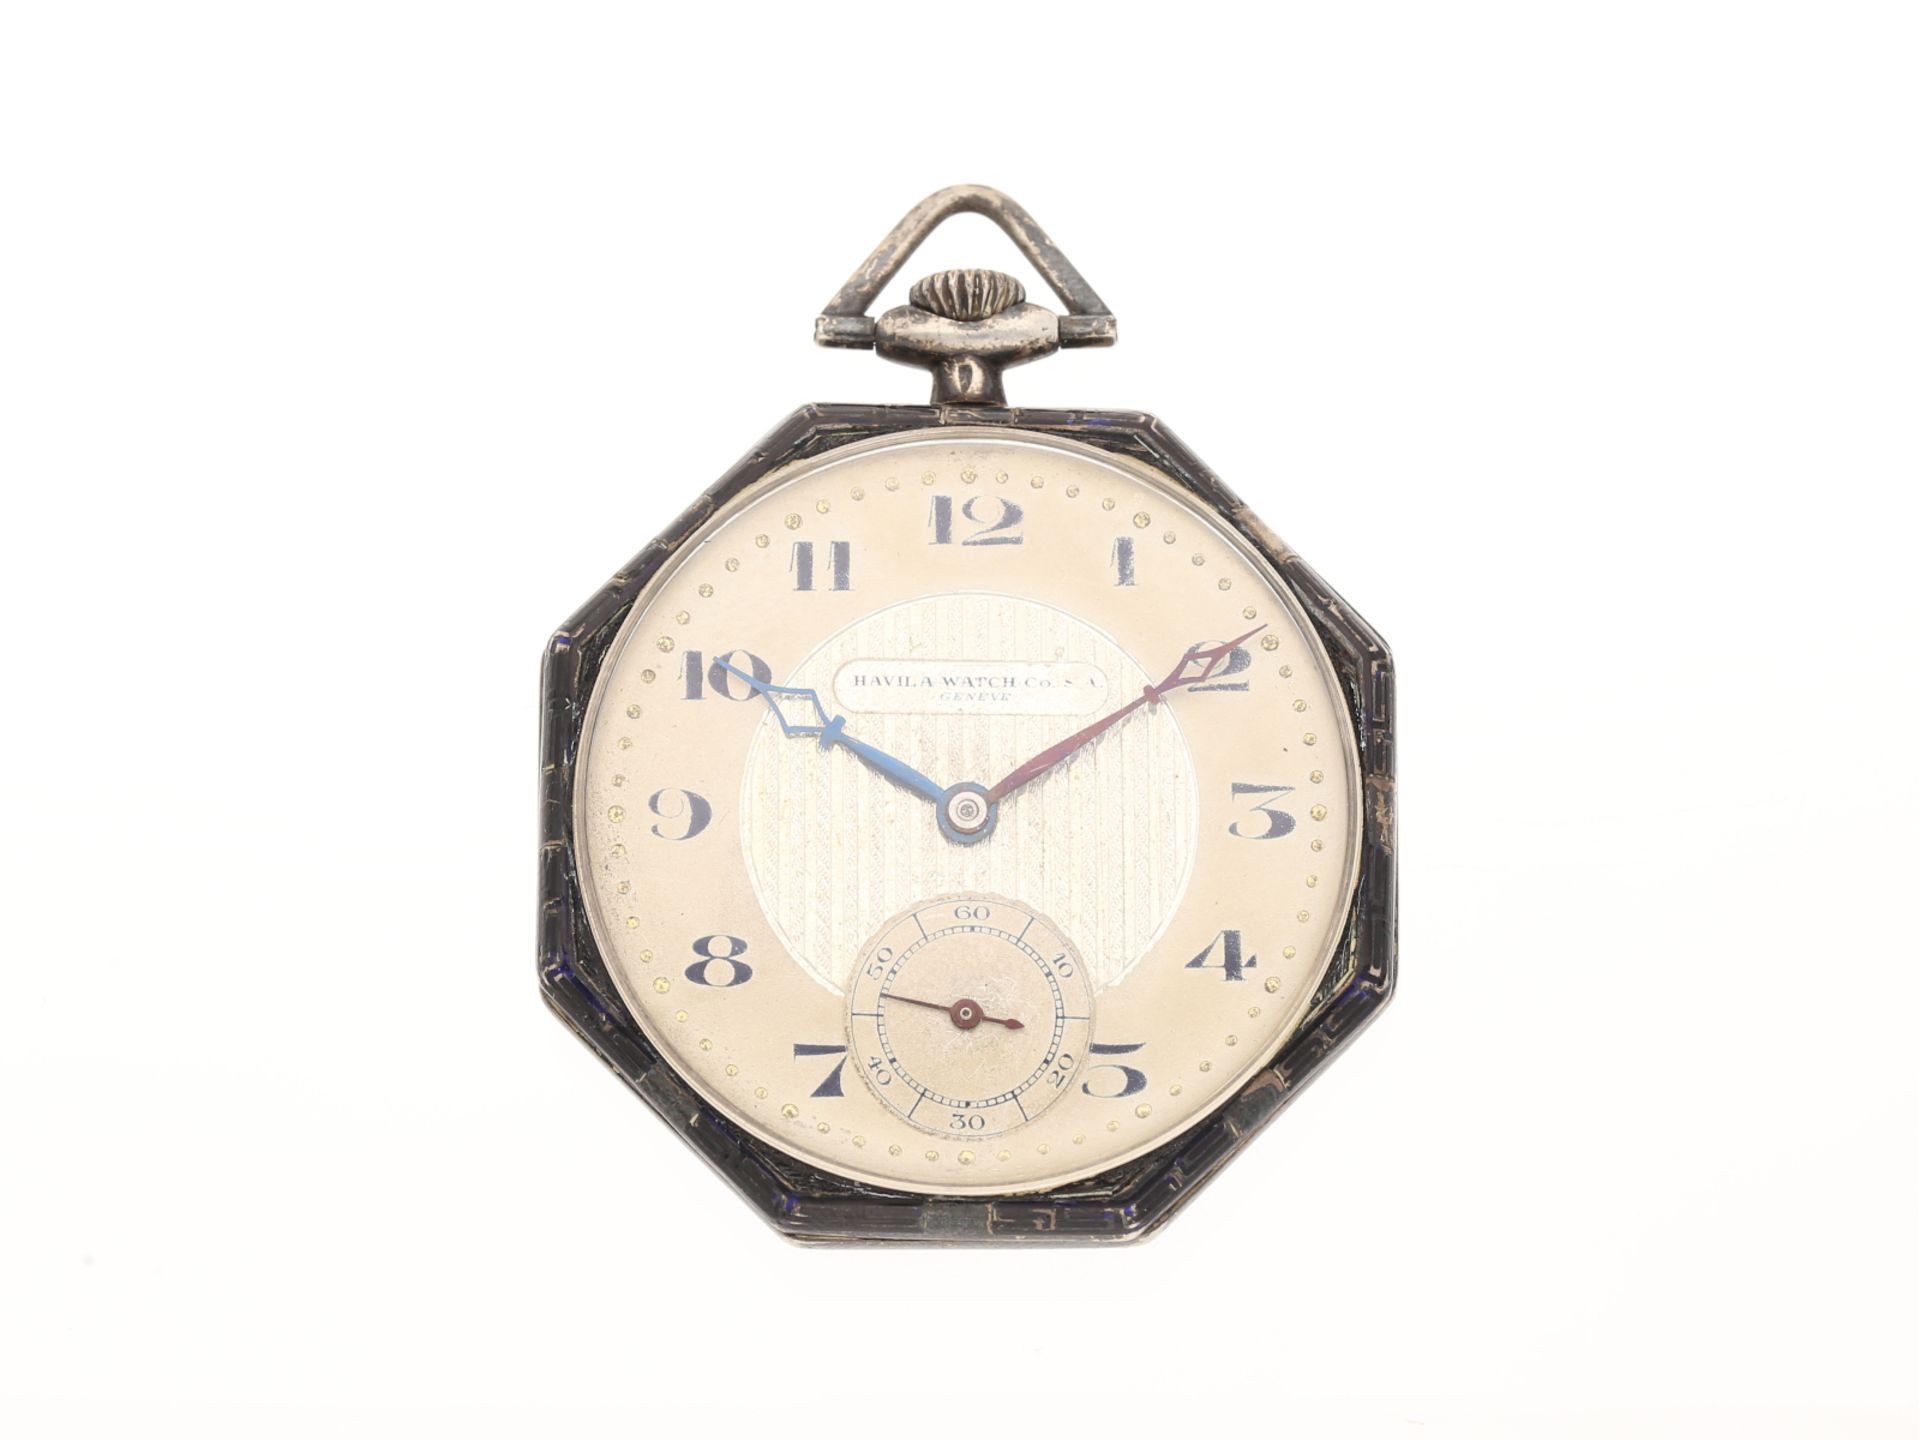 Taschenuhr: schöne Art Déco Frackuhr, Silber mit Emaille, Havila Watch Geneve, ca. 1920/30